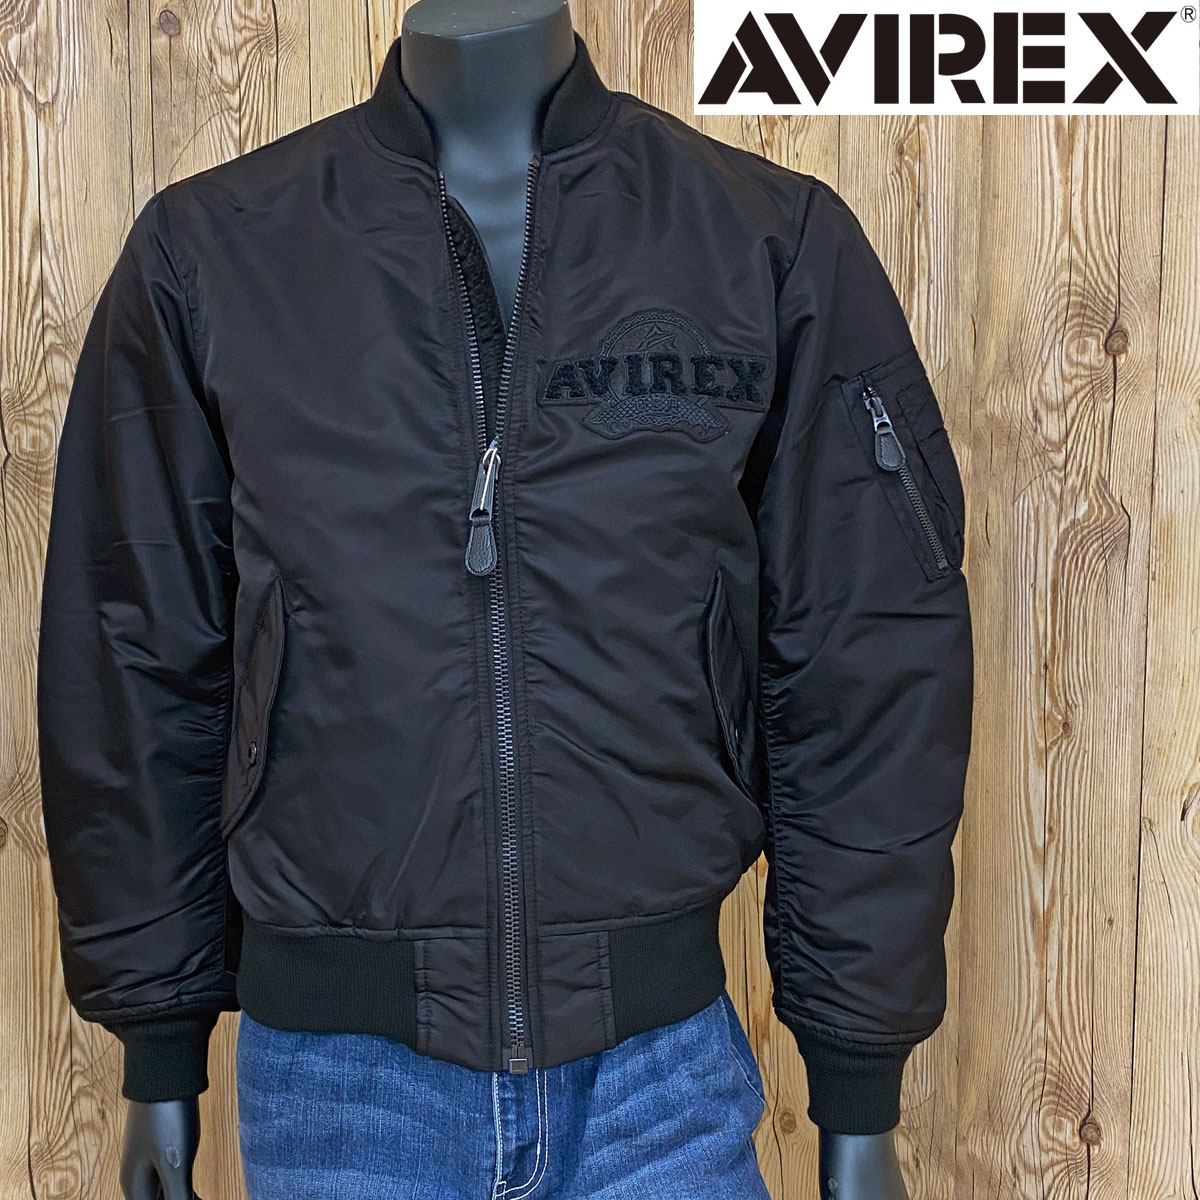 AVIREX アヴィレックス CP MA-1 EAGLE ミリタリー ジャケット アウター ブルゾン メンズ ブランド